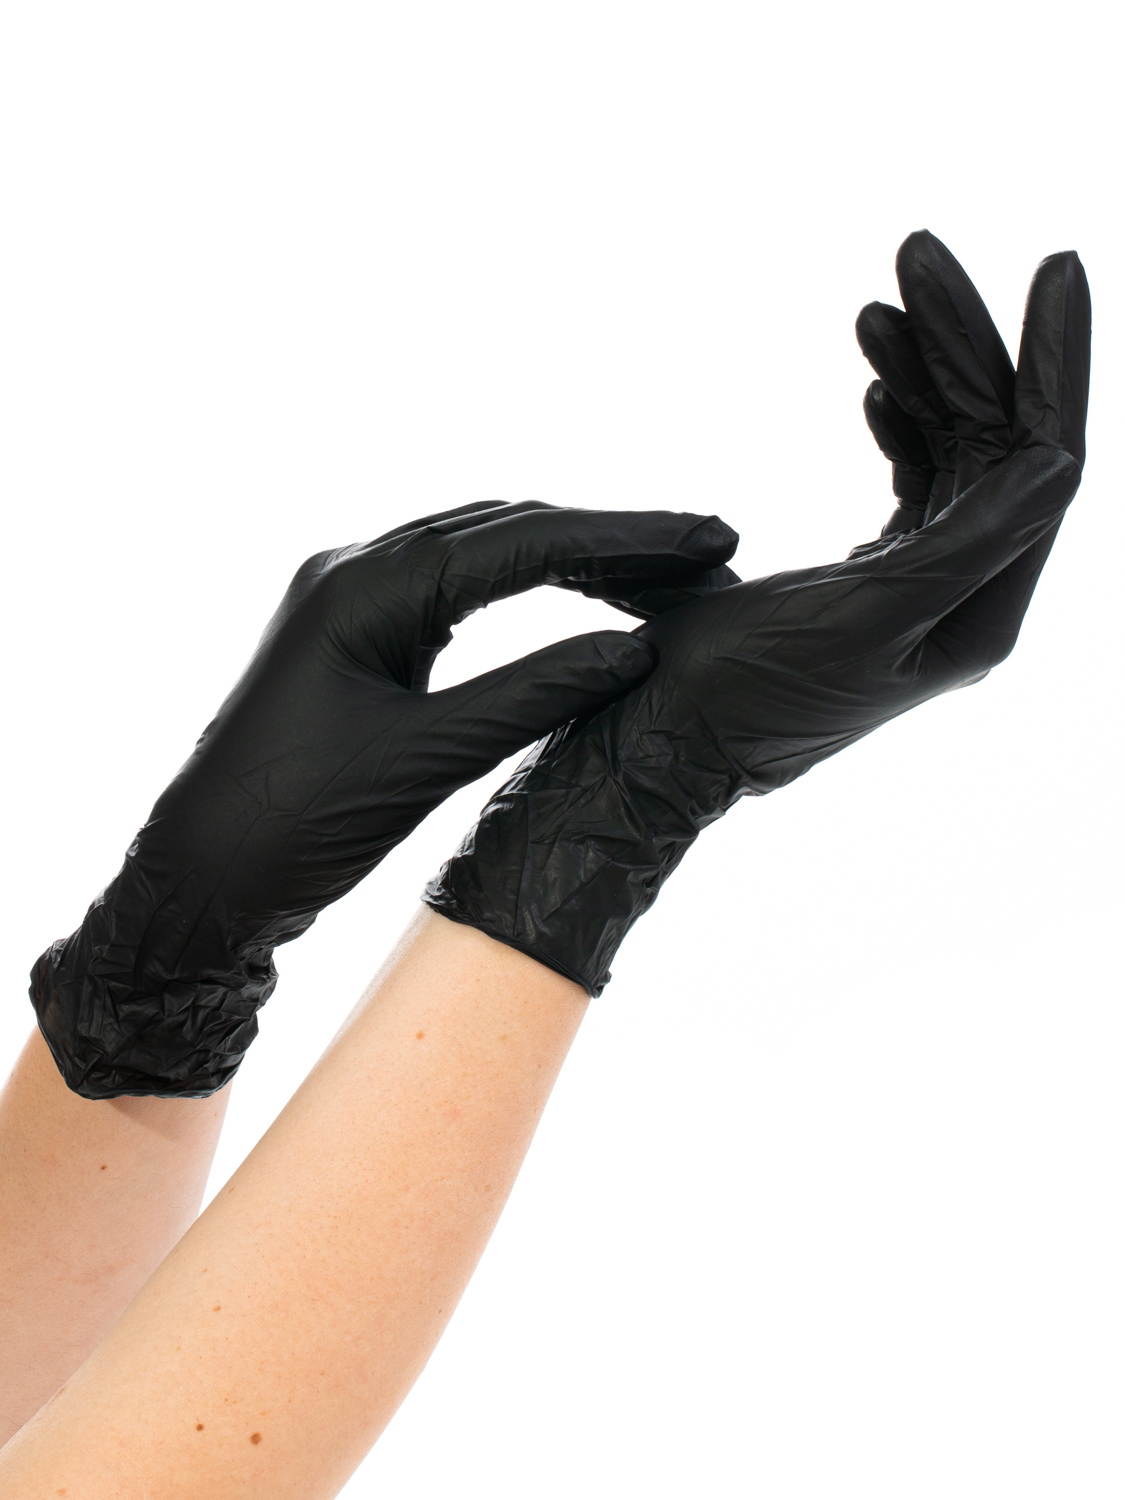 Перчатки одноразовые нитриловые NitriMAX черные размер XL, 100 штук, черный  - купить